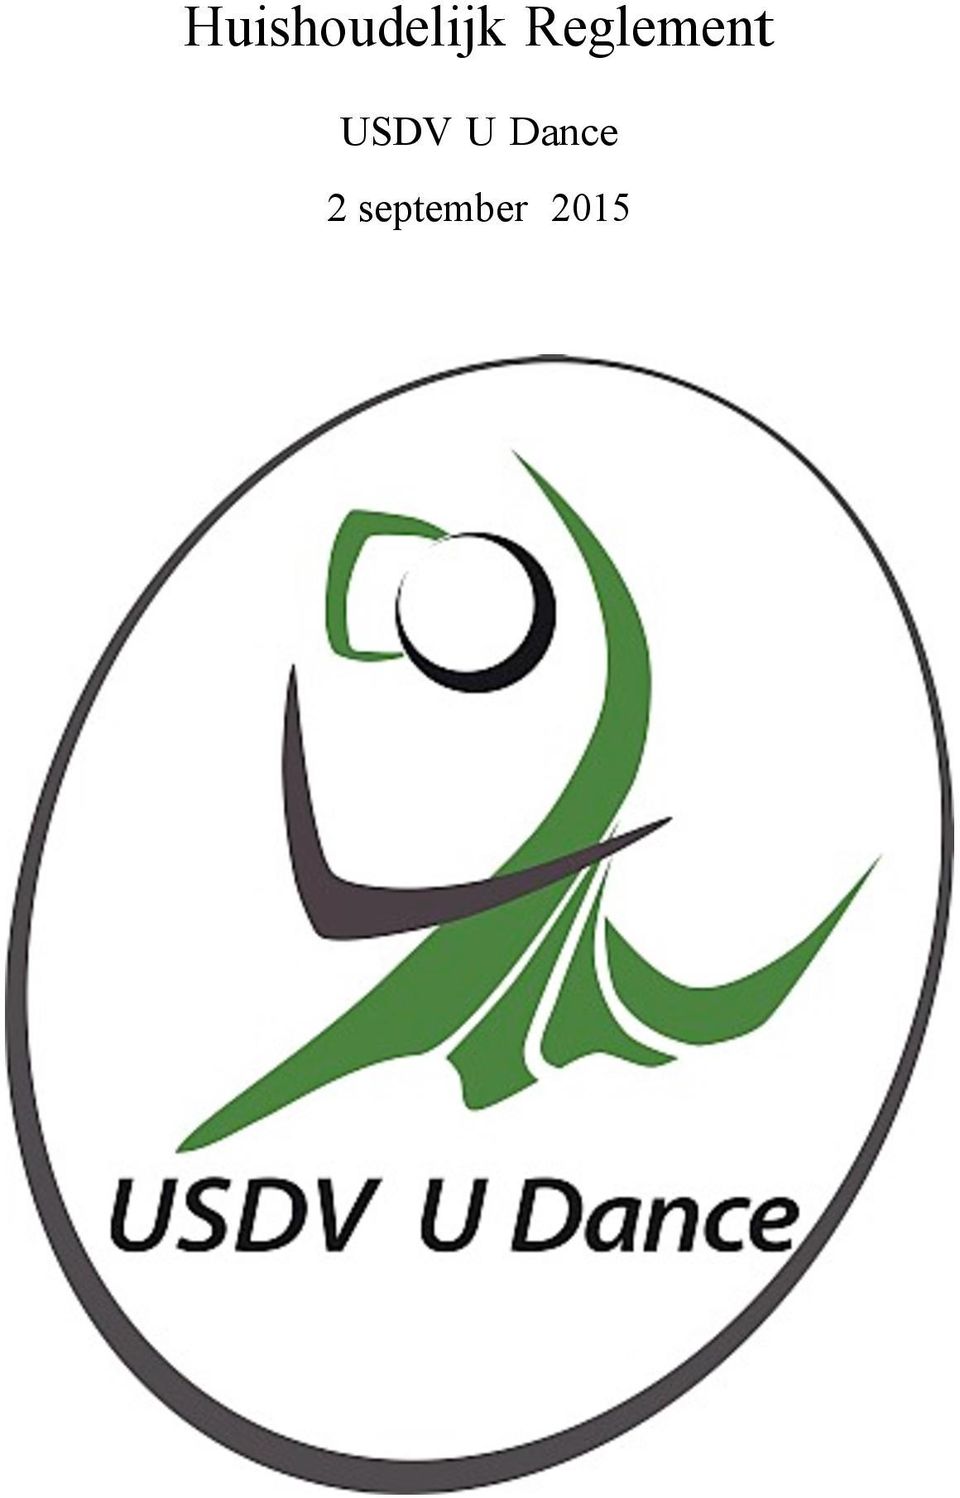 USDV U Dance